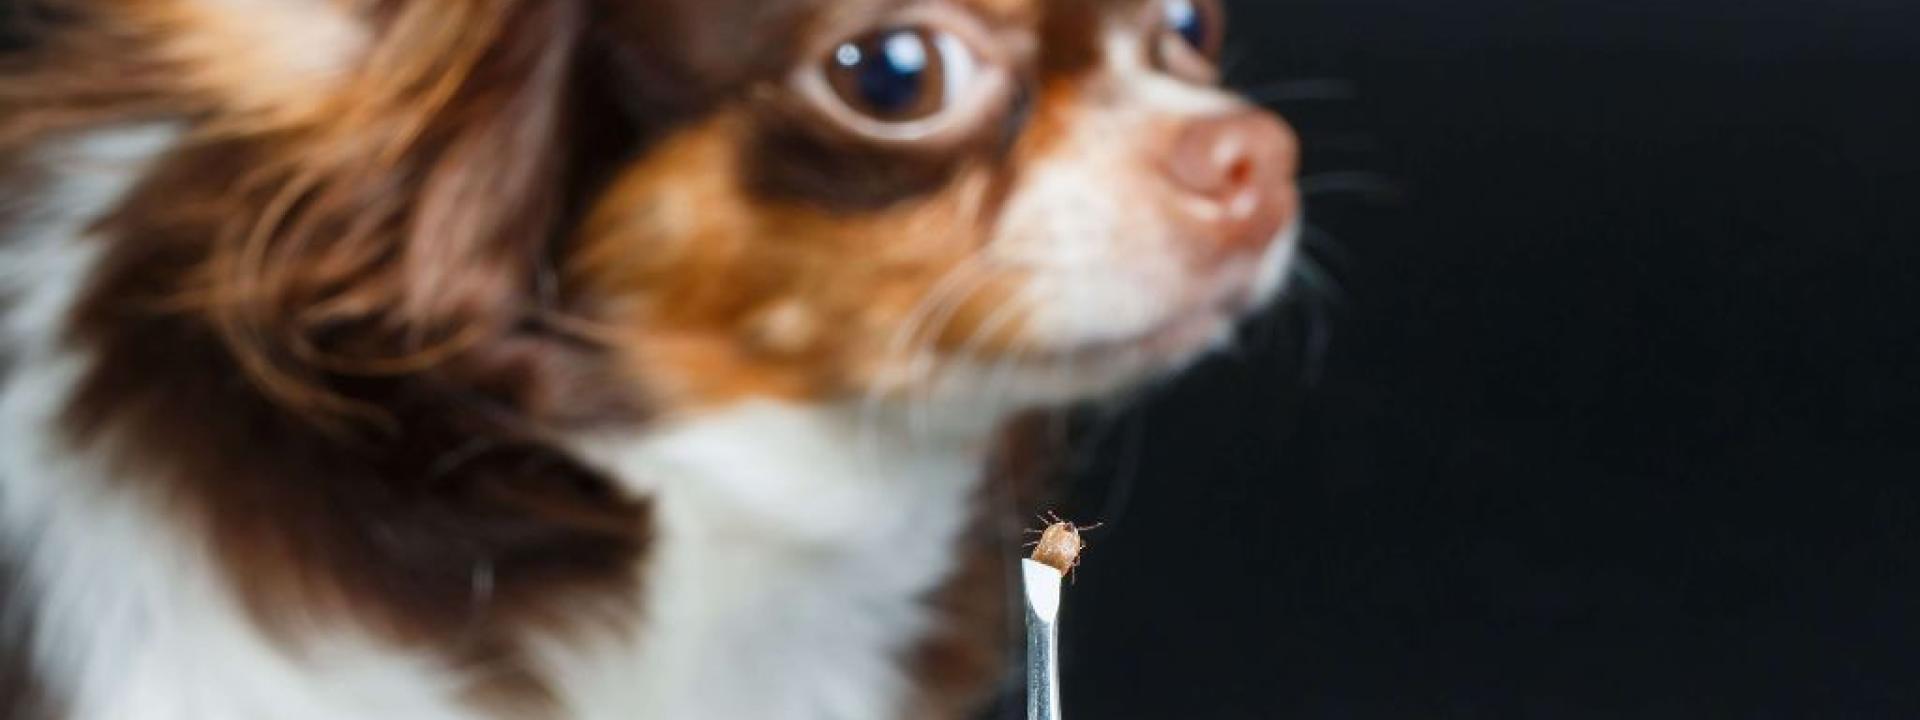 Chihuahua looking at tick